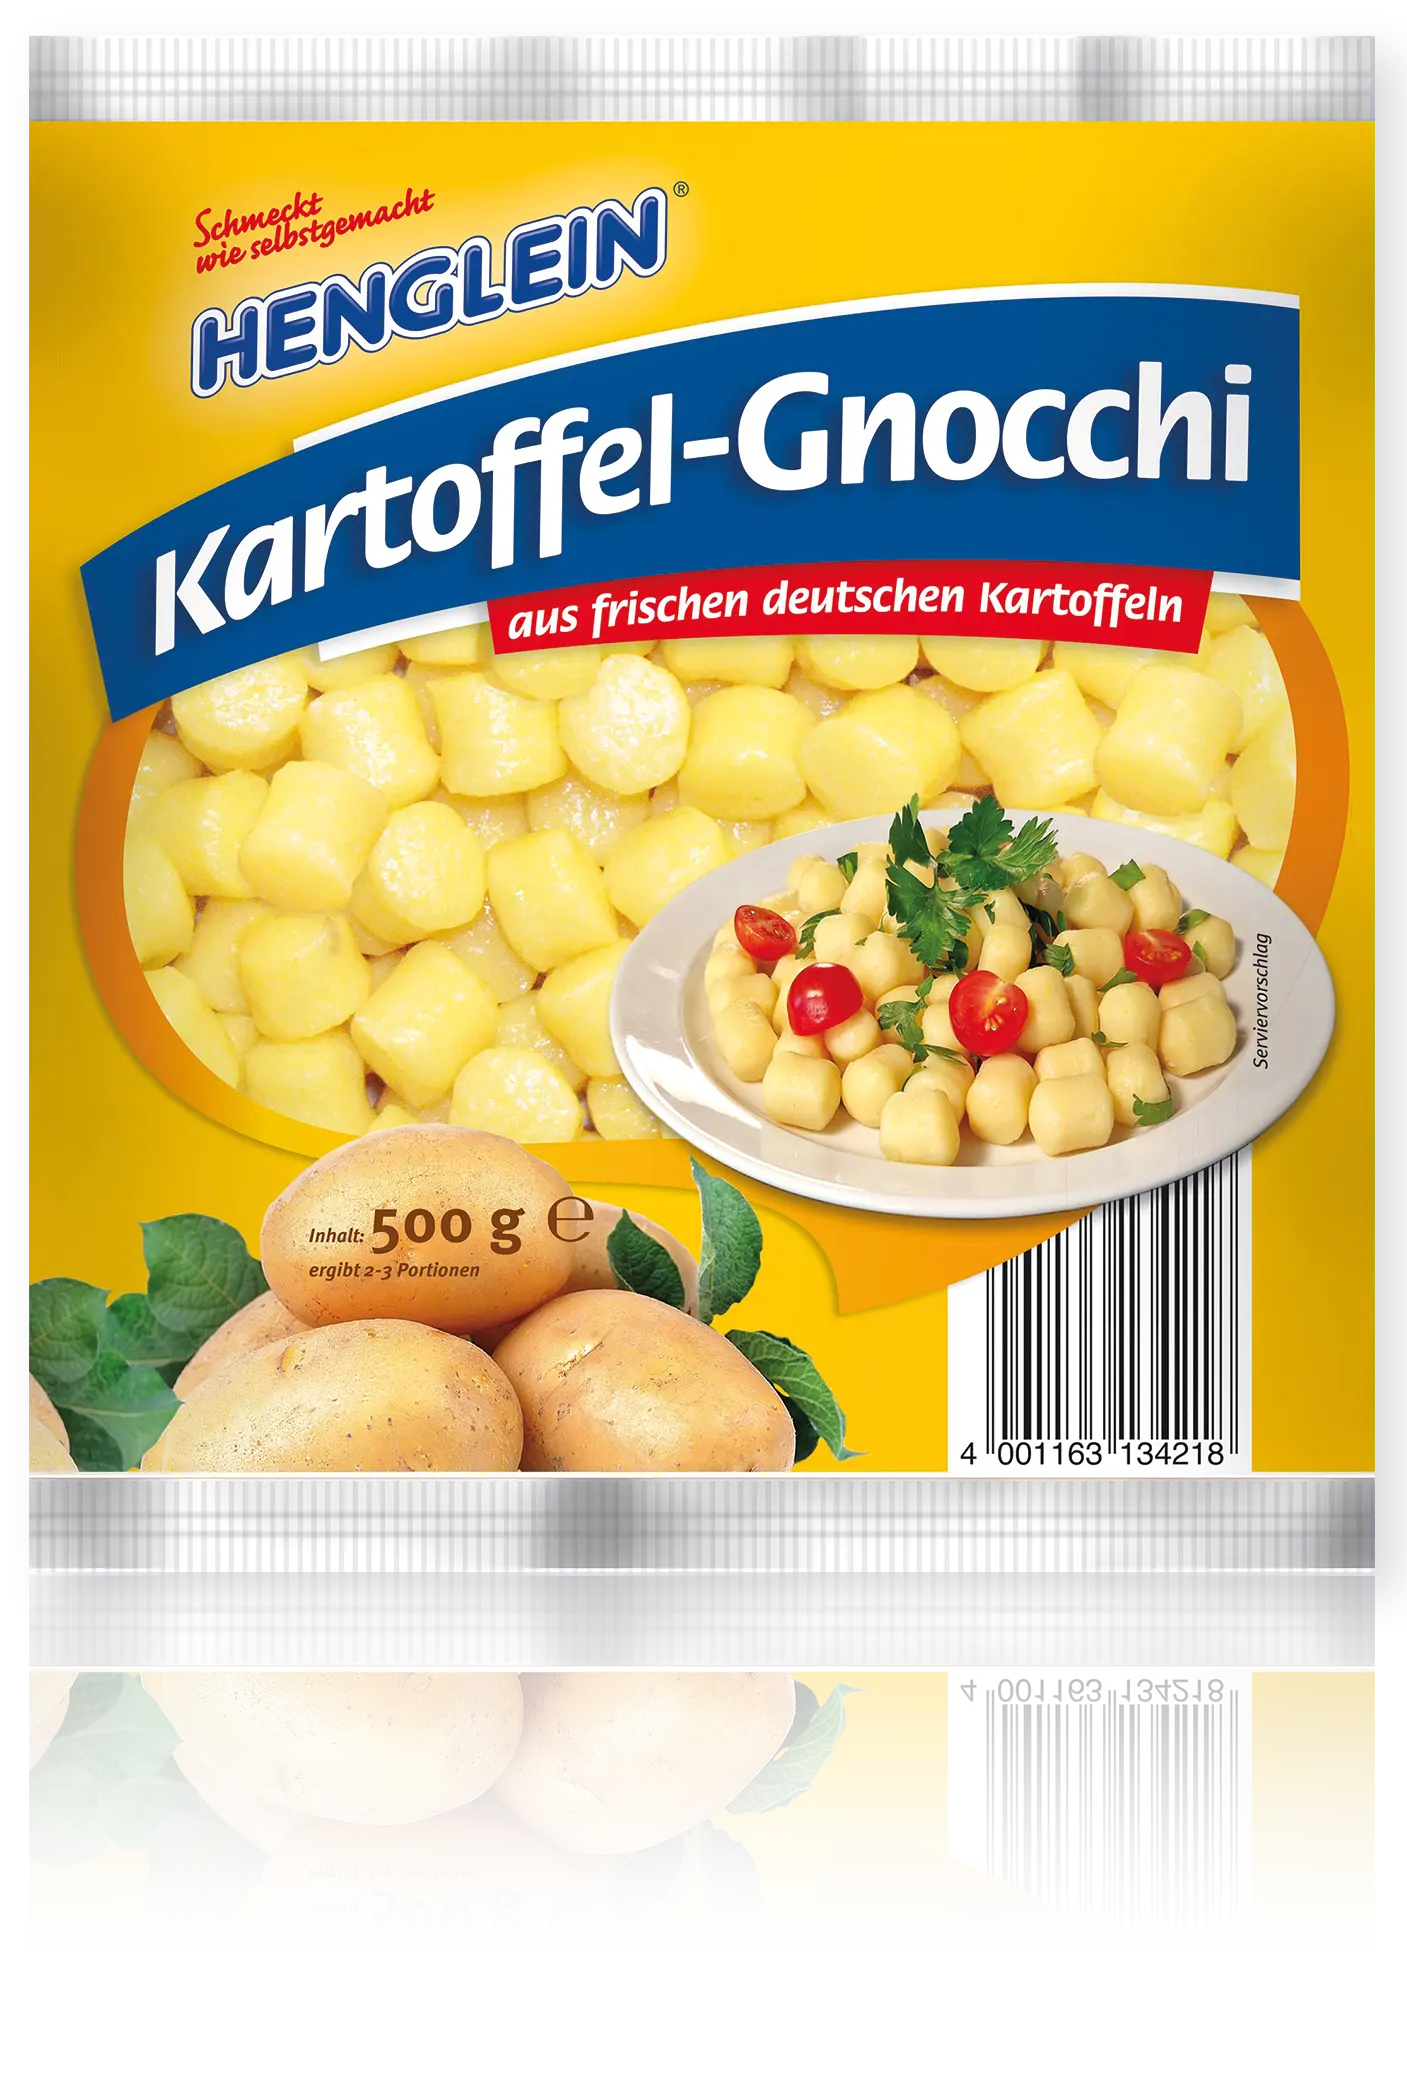 Kartoffel-Gnocchi von HENGLEIN